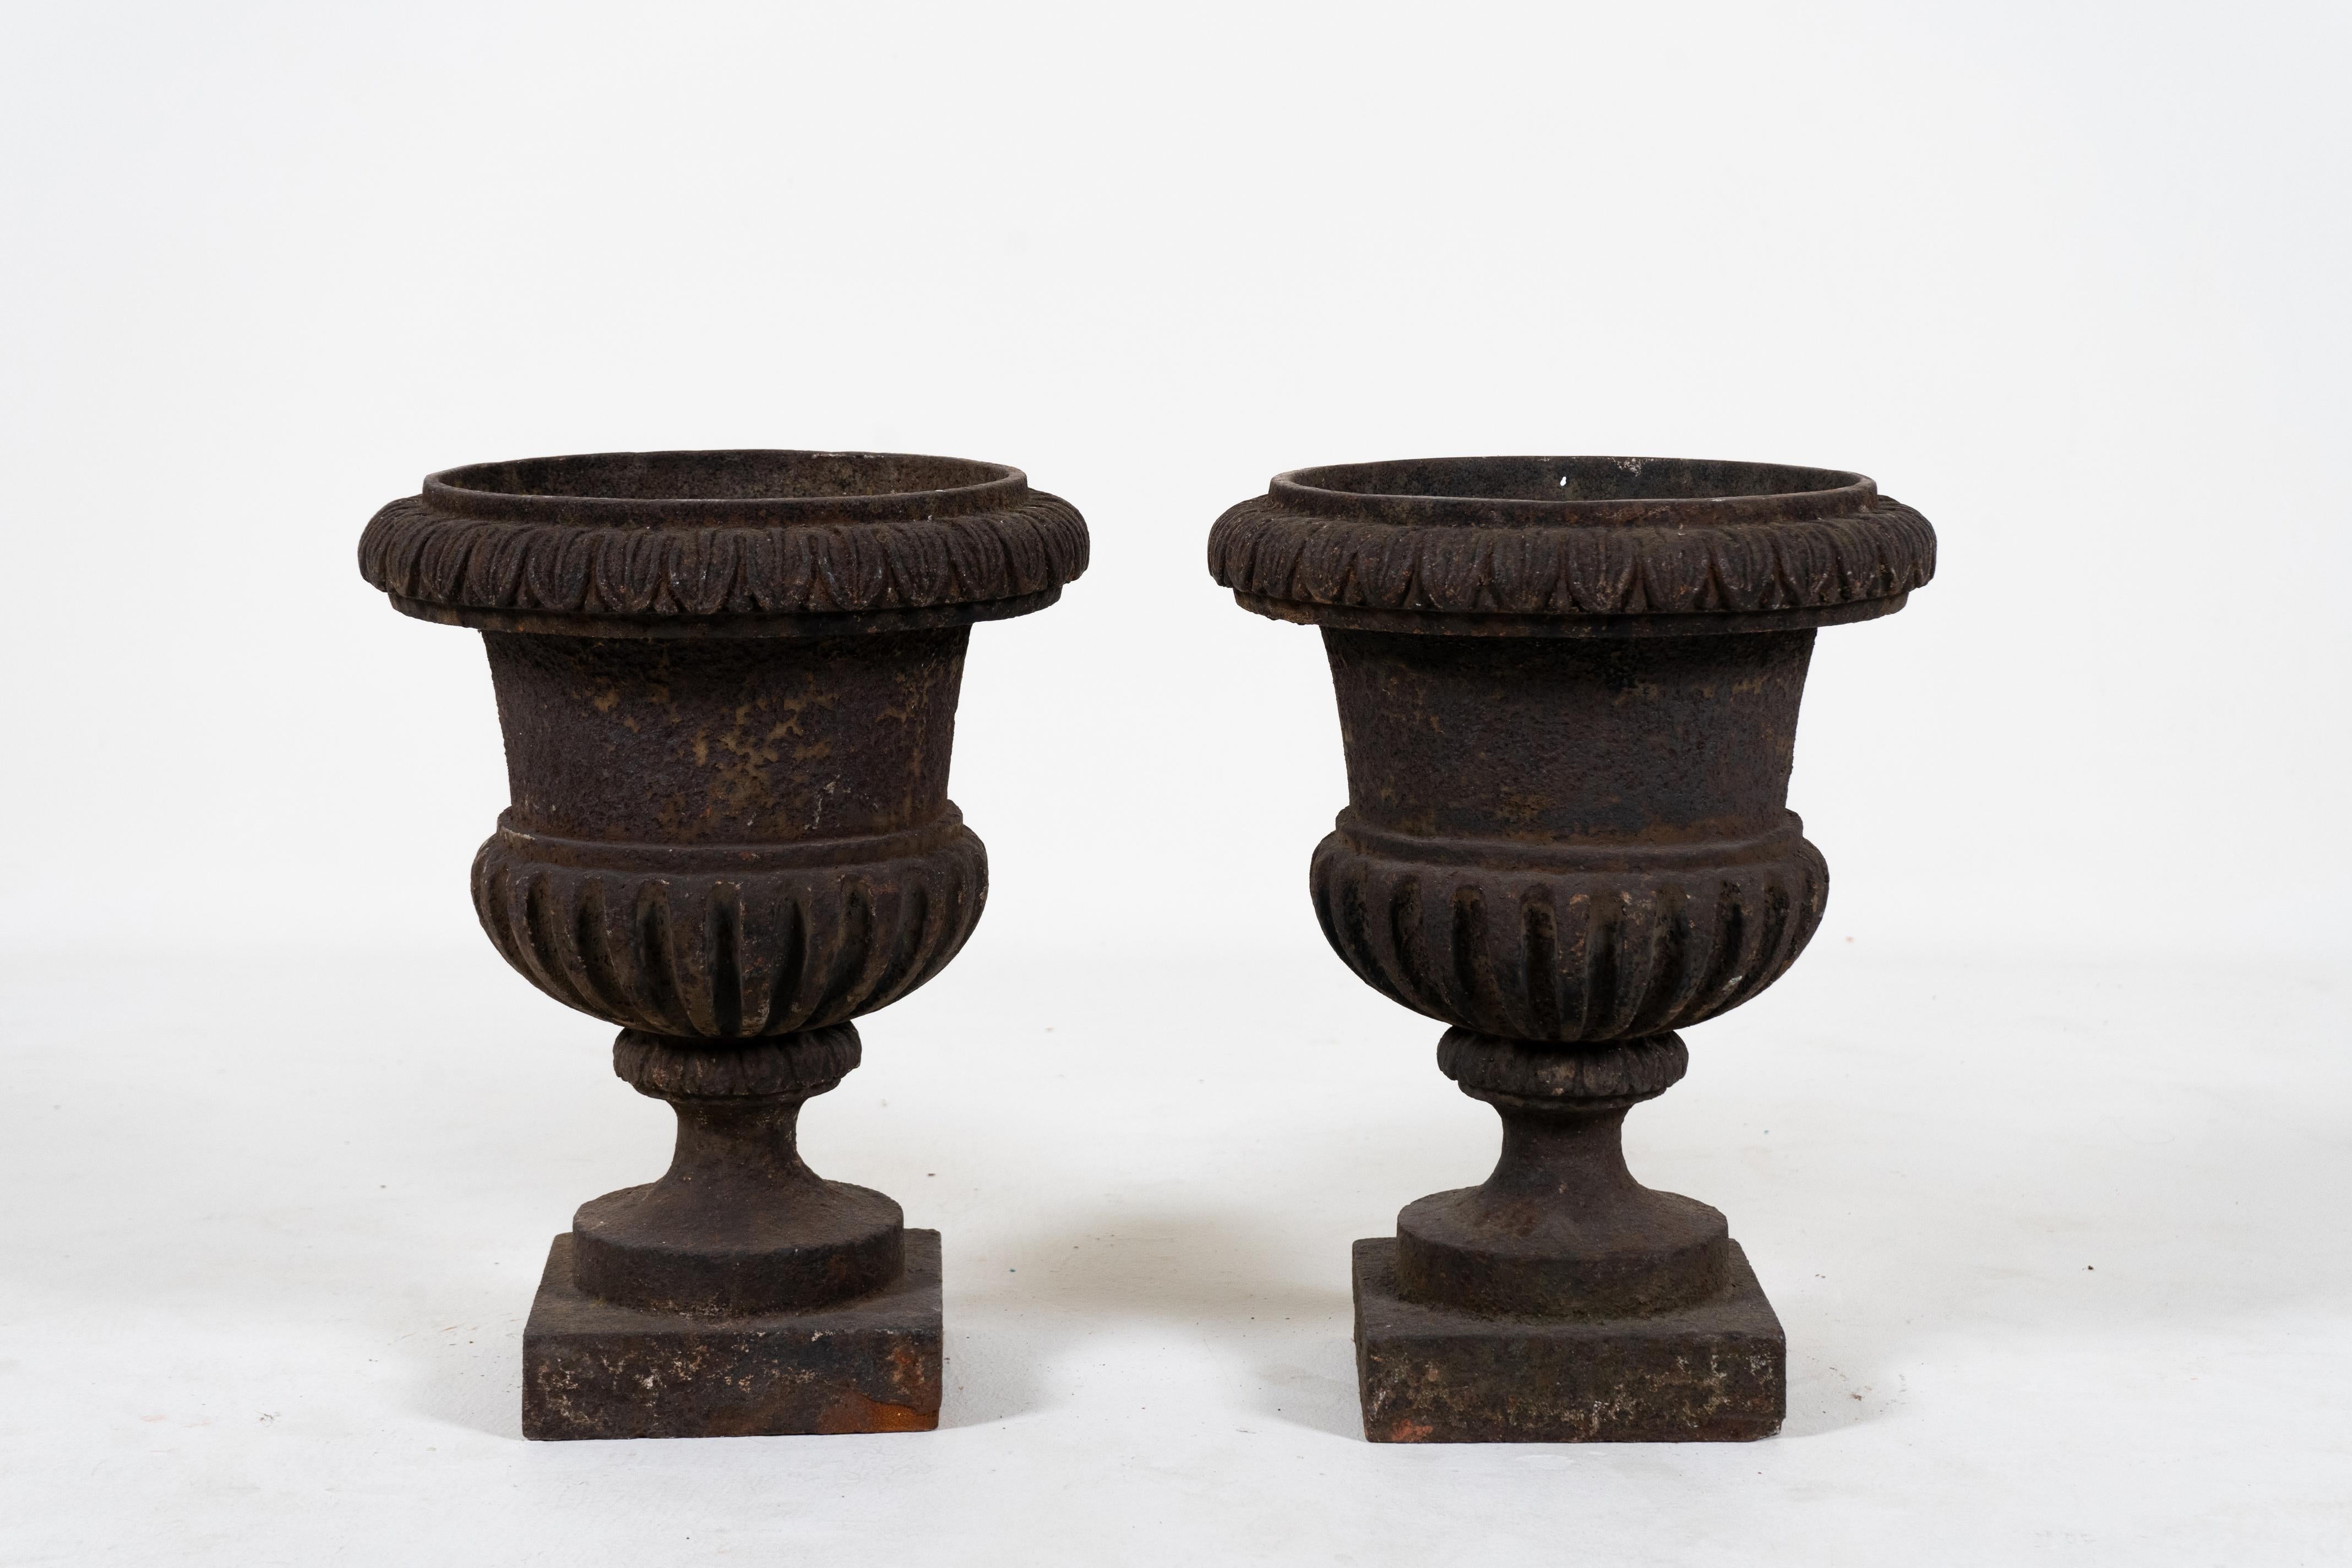 Dieses Paar Gärtner aus dem frühen 20. Jahrhundert ist aus Gusseisen gefertigt und weist eine reiche und erdige Patina auf. Diese Urnen sind zwar im Campana-Stil gehalten, aber ungewöhnlich robust und vereinfacht. Das Design der gelappten Böden ist